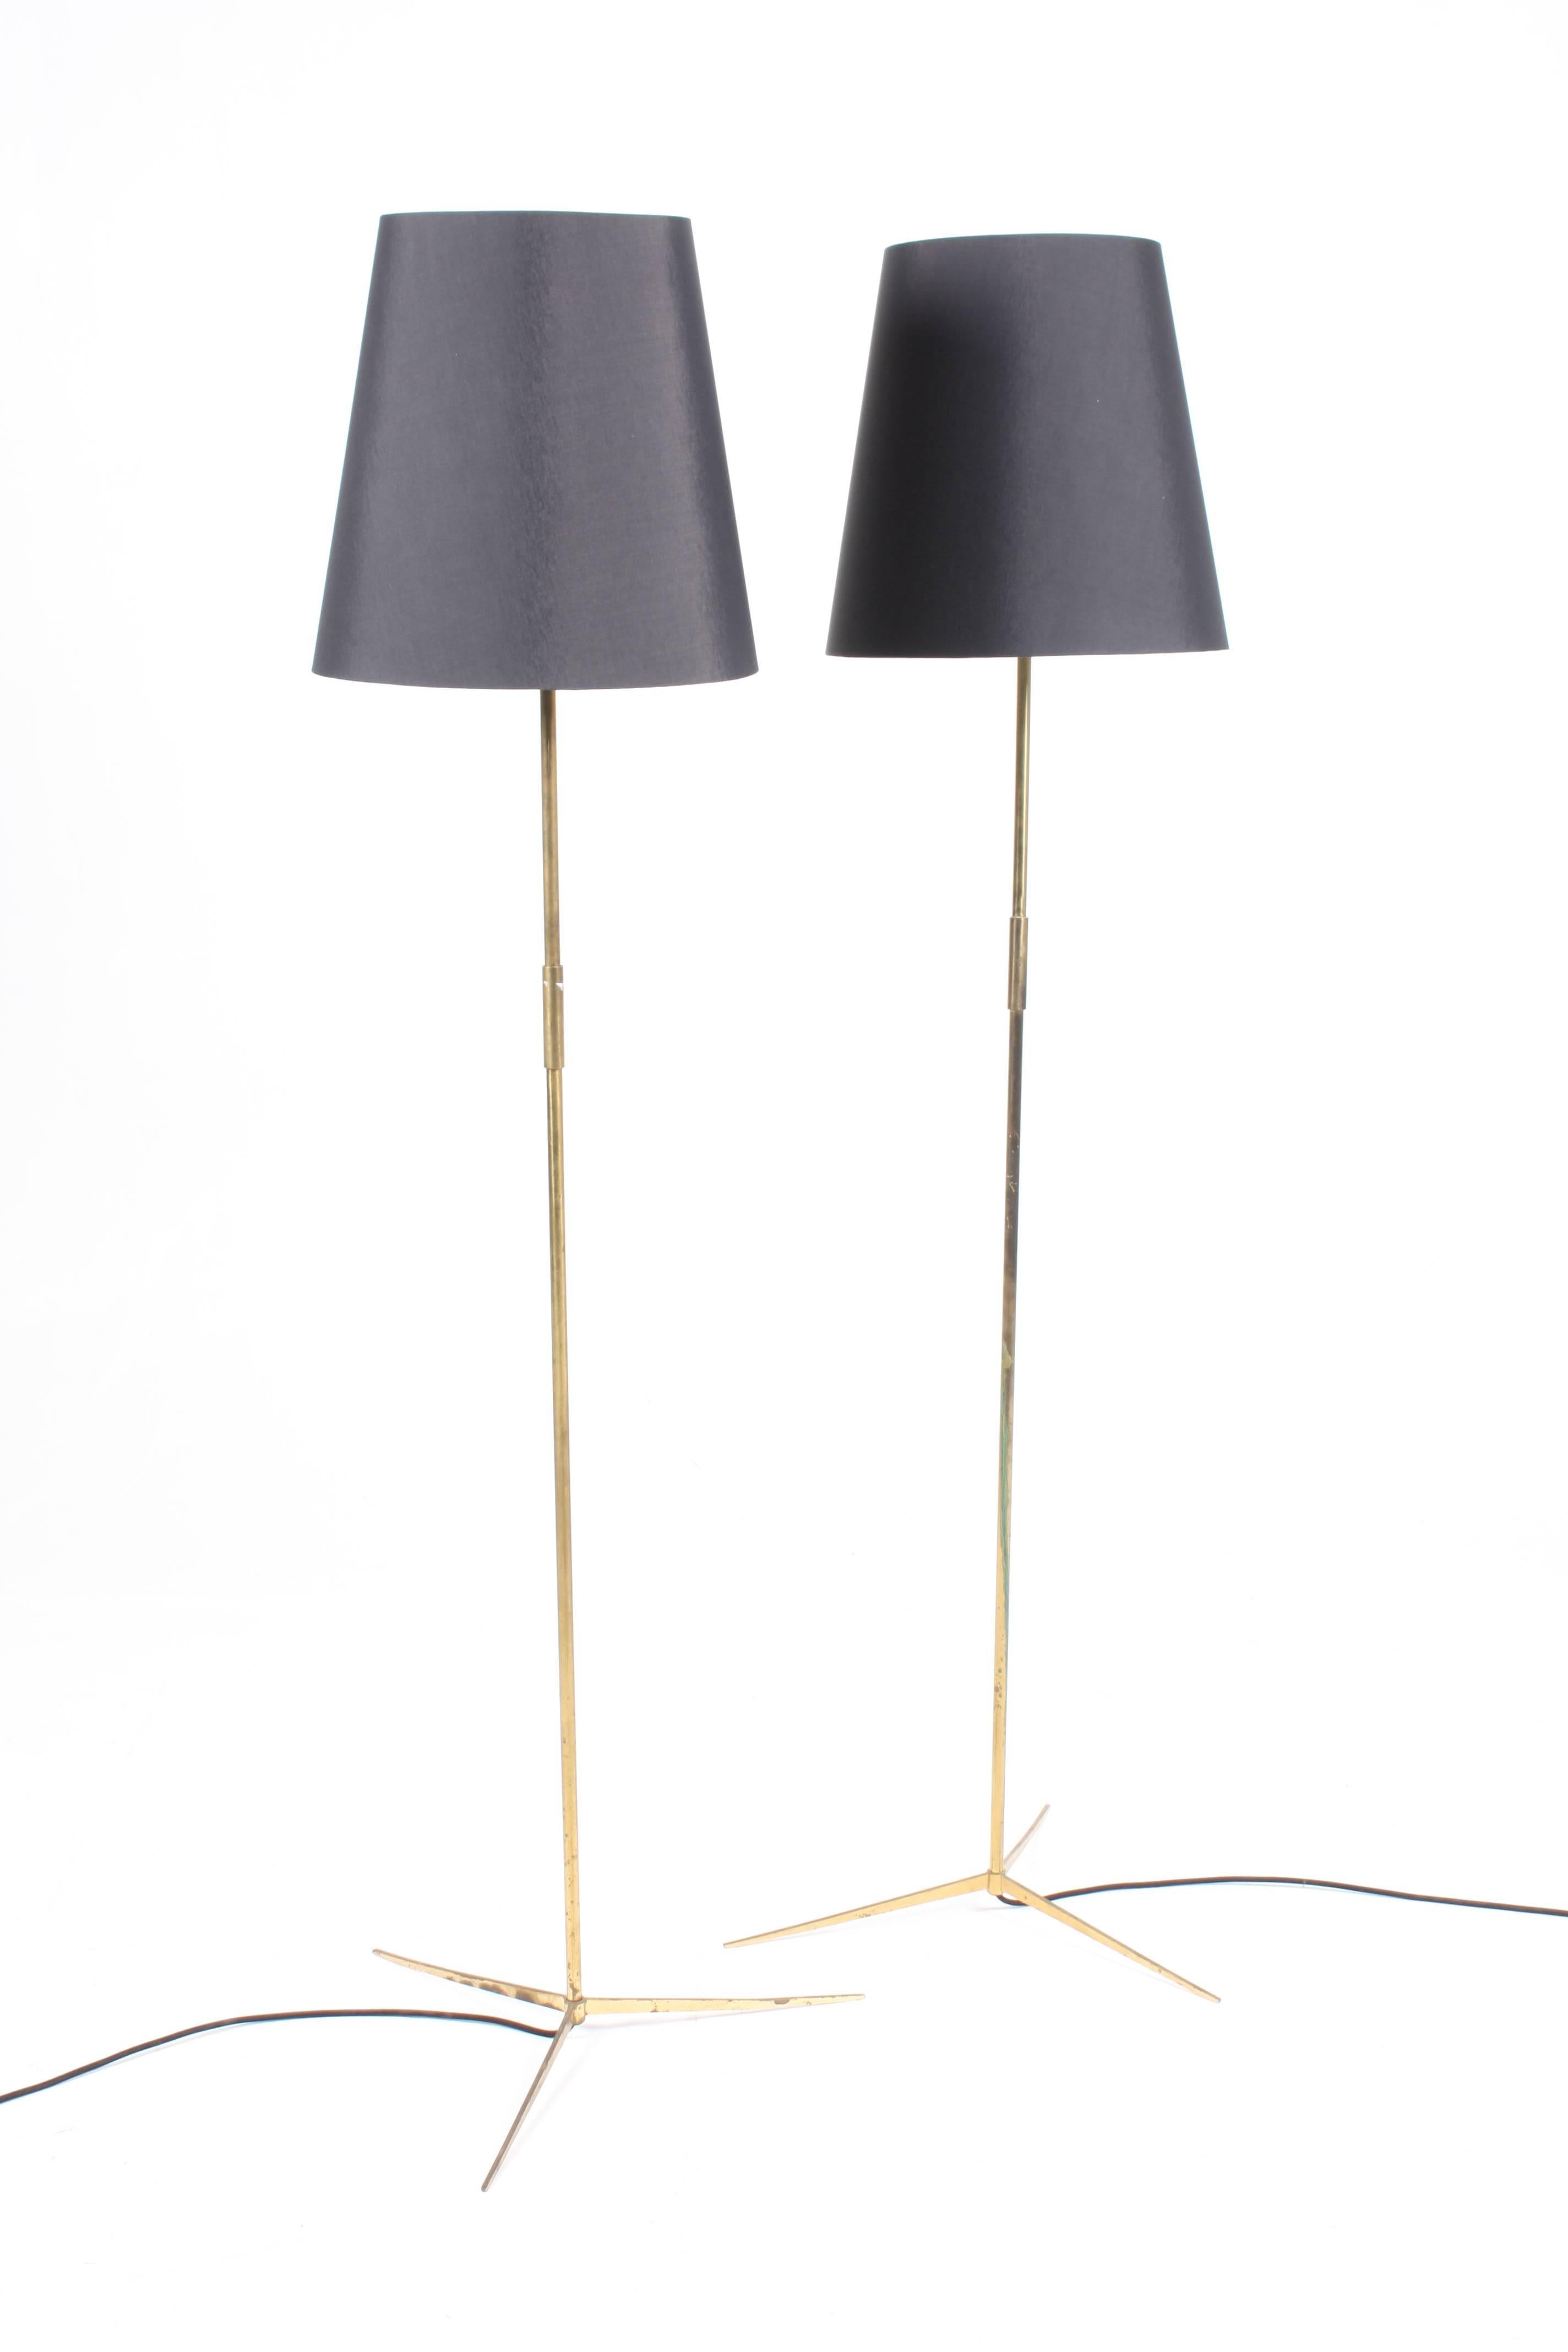 Scandinavian Modern Pair of Elegant Scandinavian Floor Lamps